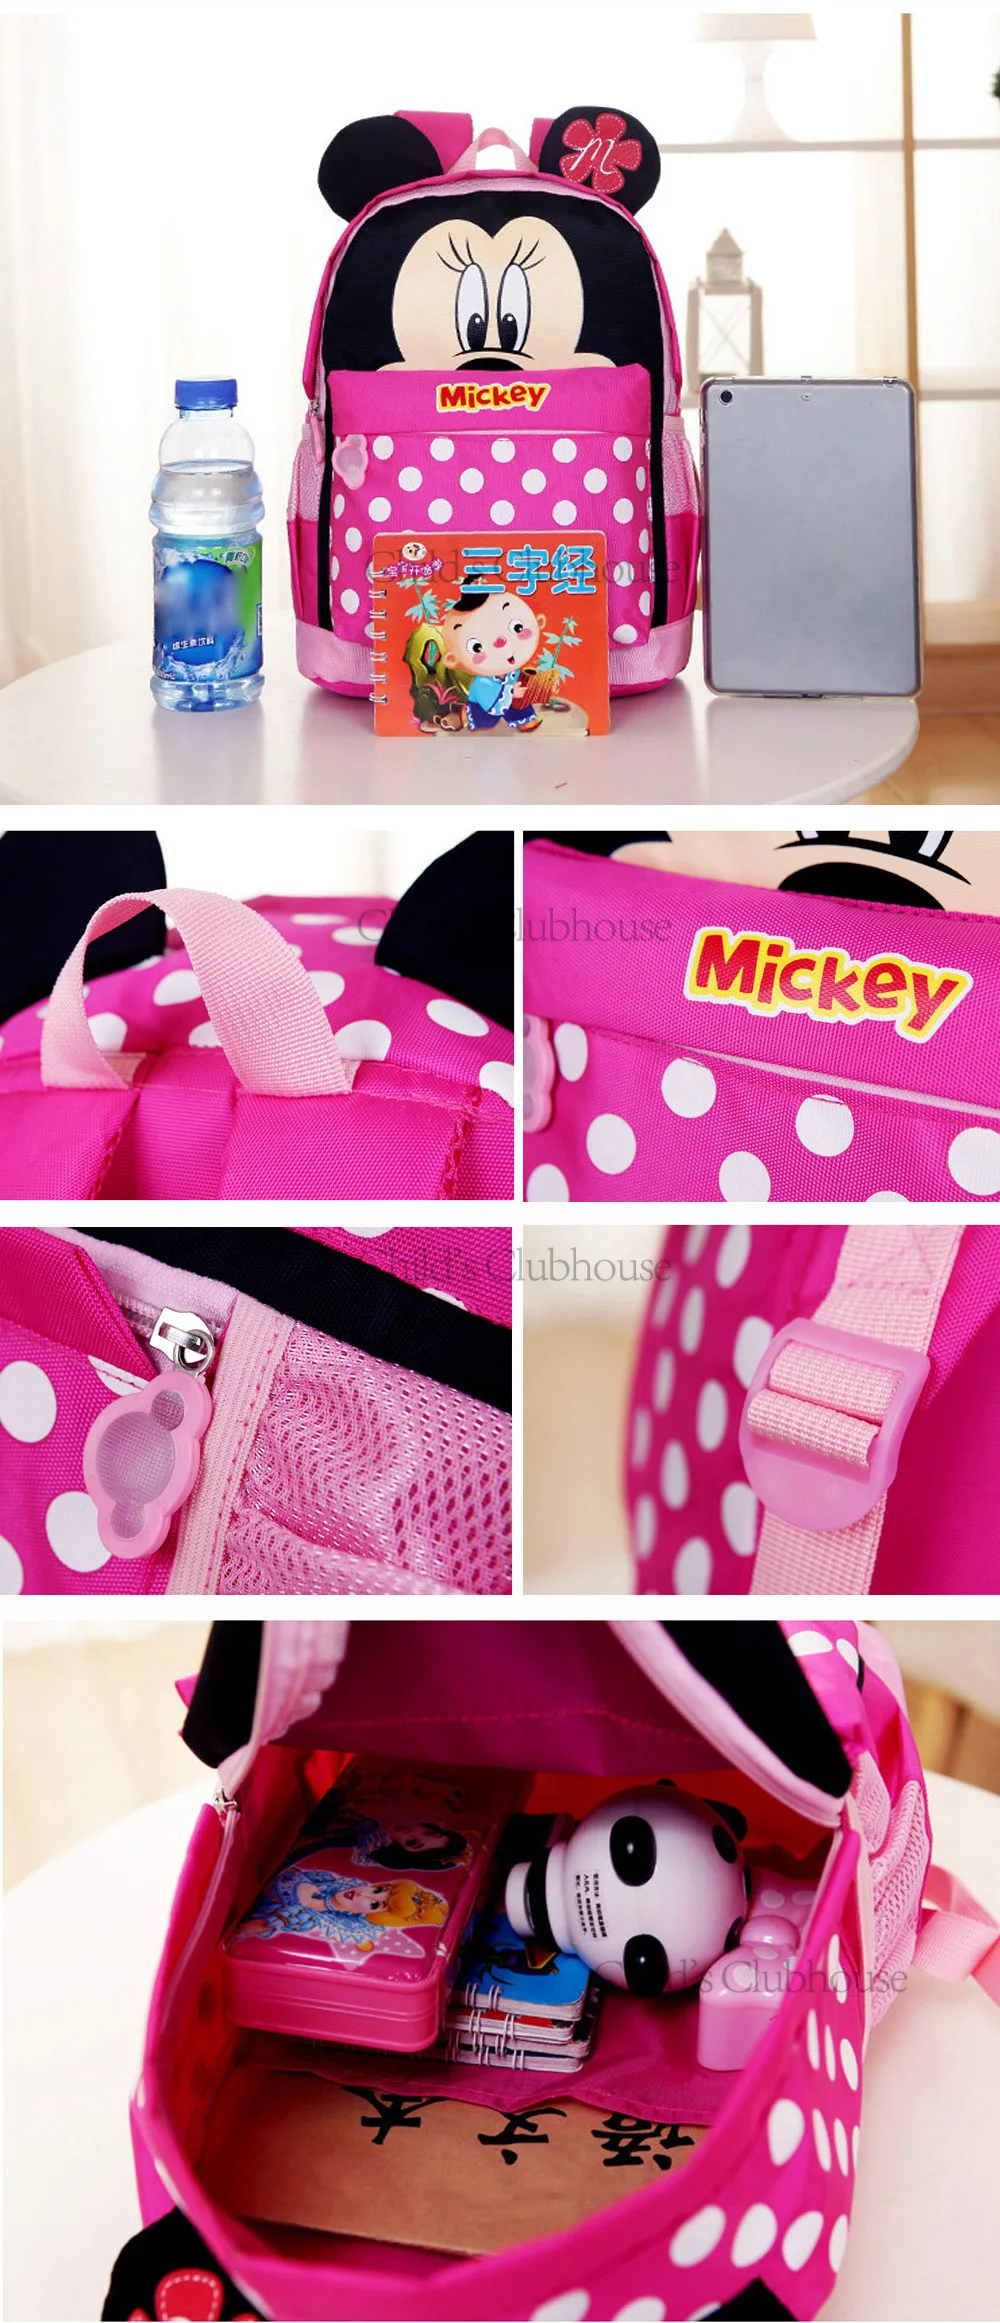 disney детей Микки и Минни Маус для мальчиков и девочек, школьная сумка, очаровательные детские рюкзаки Мышь мультфильм школьные ранцы милый детский рюкзак для путешествий подарки